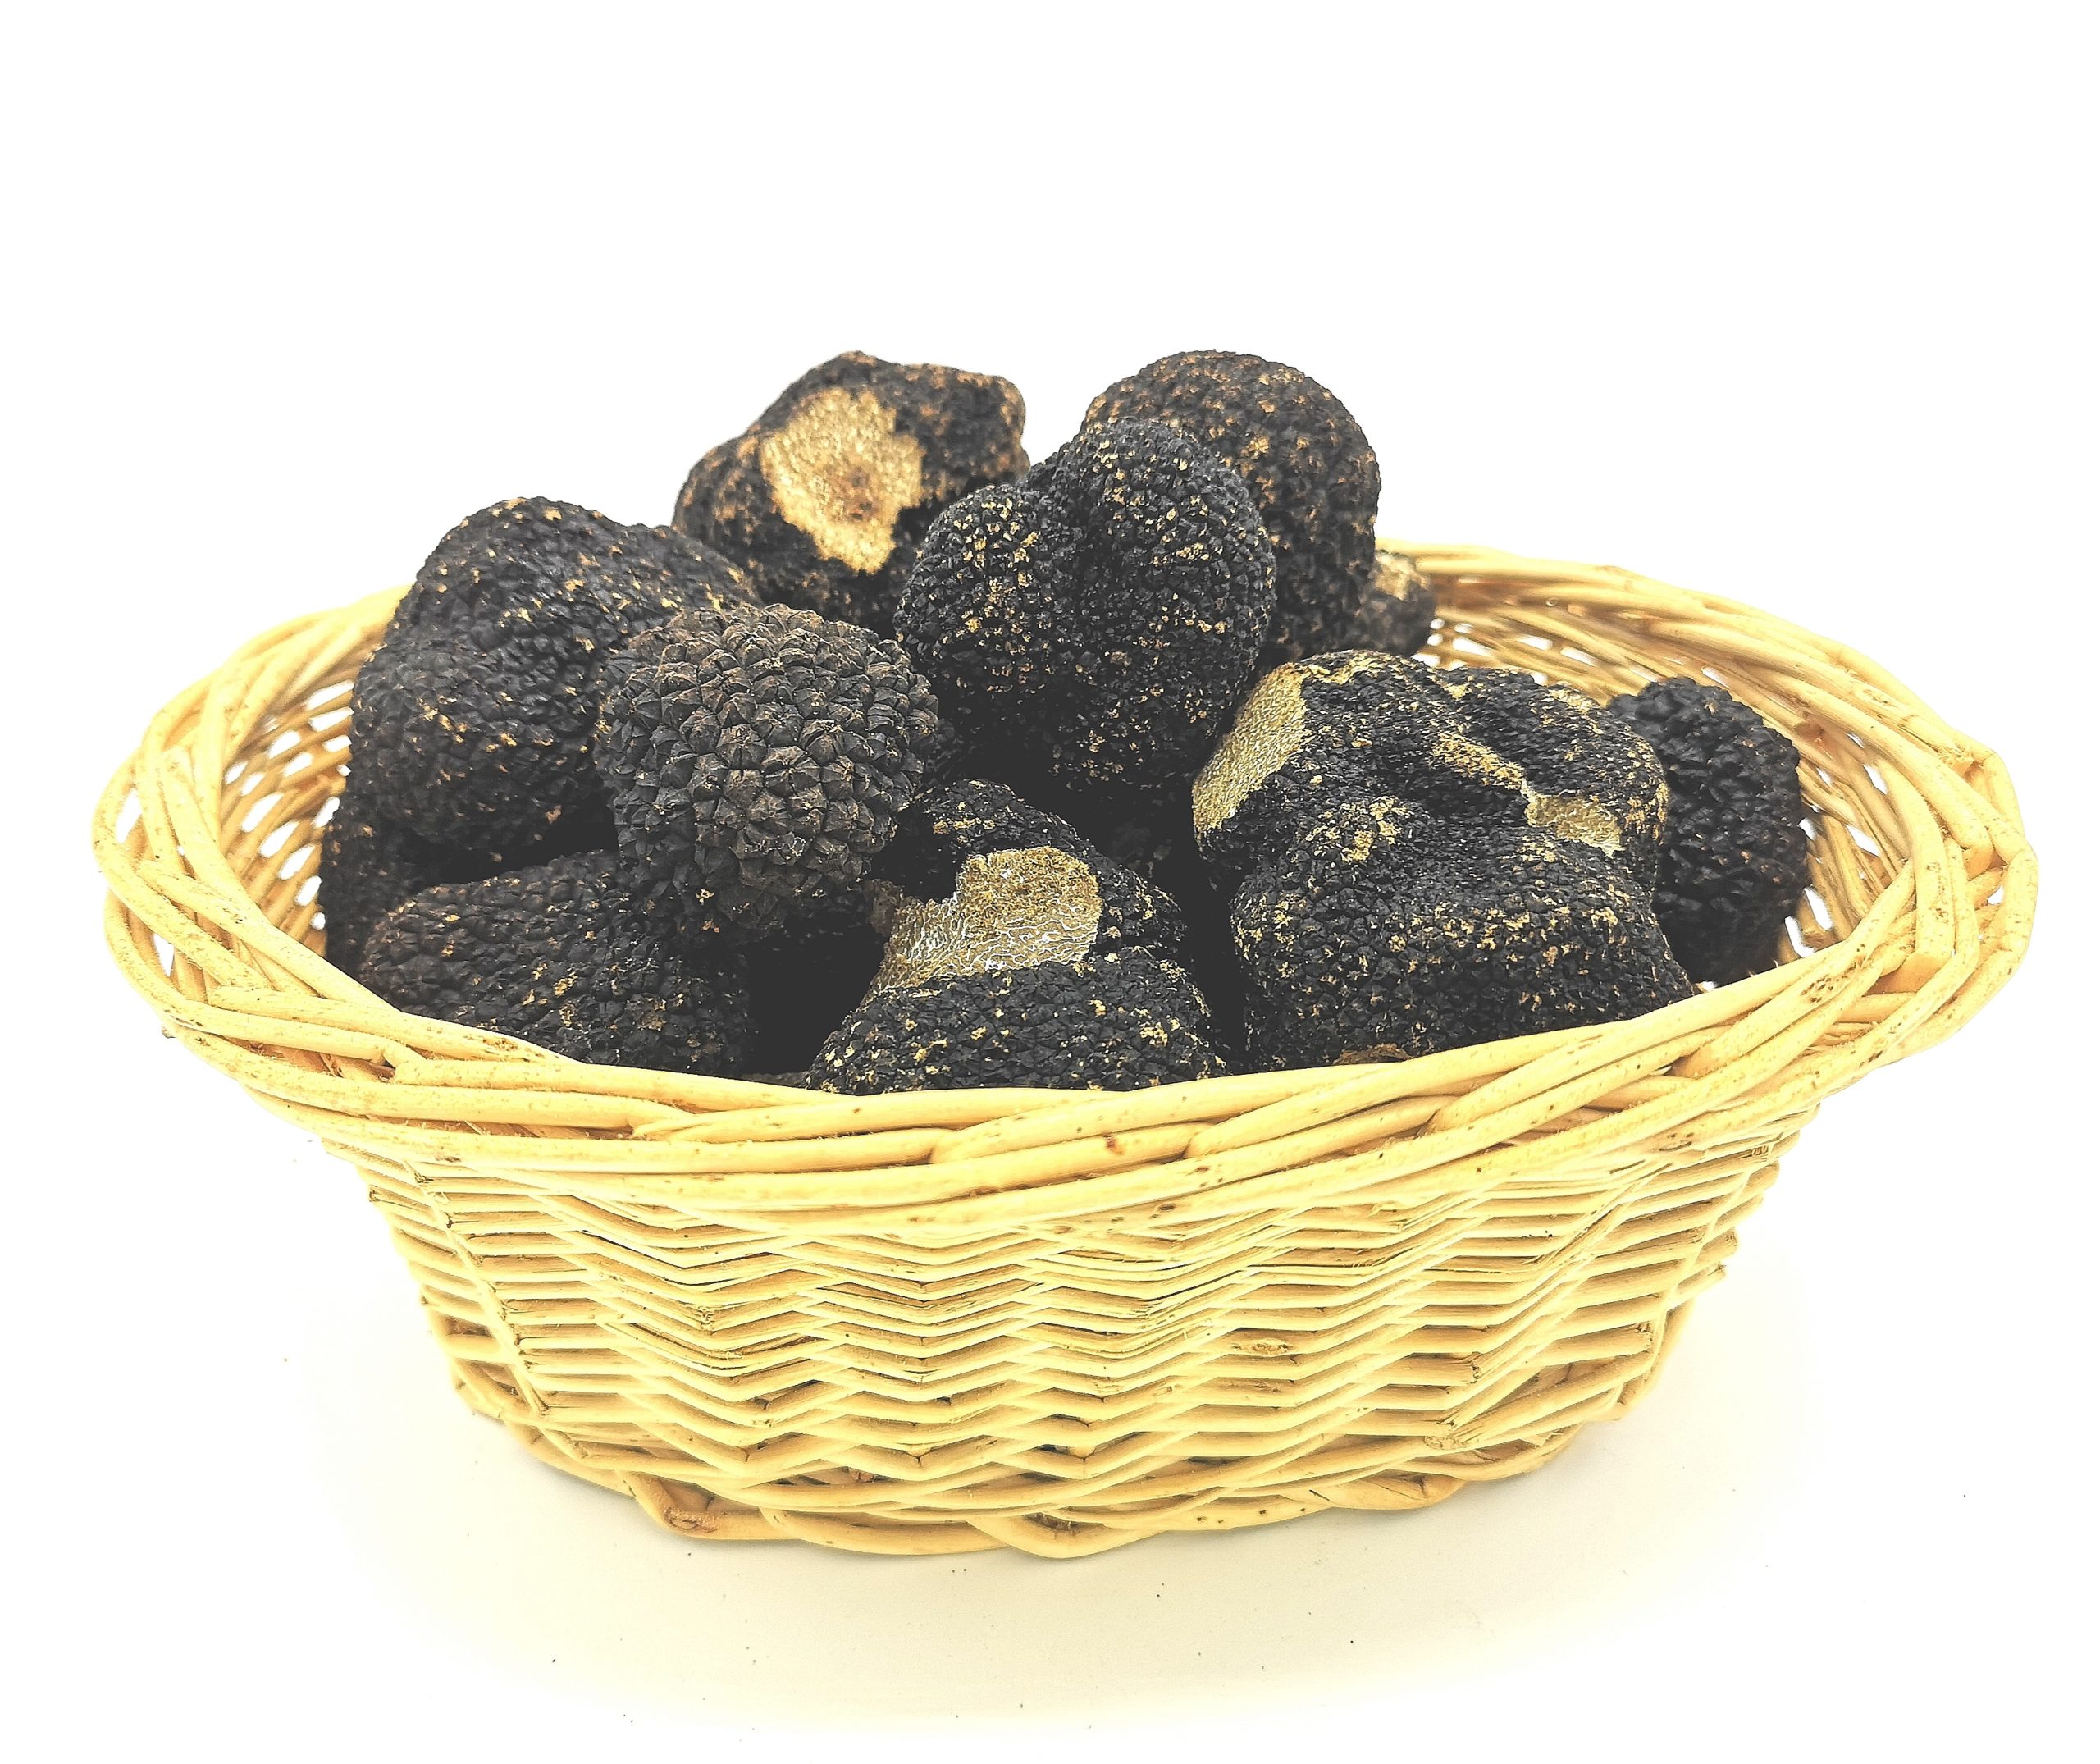 Truffe noire : nos conseils et astuces pour cuisiner vos truffes